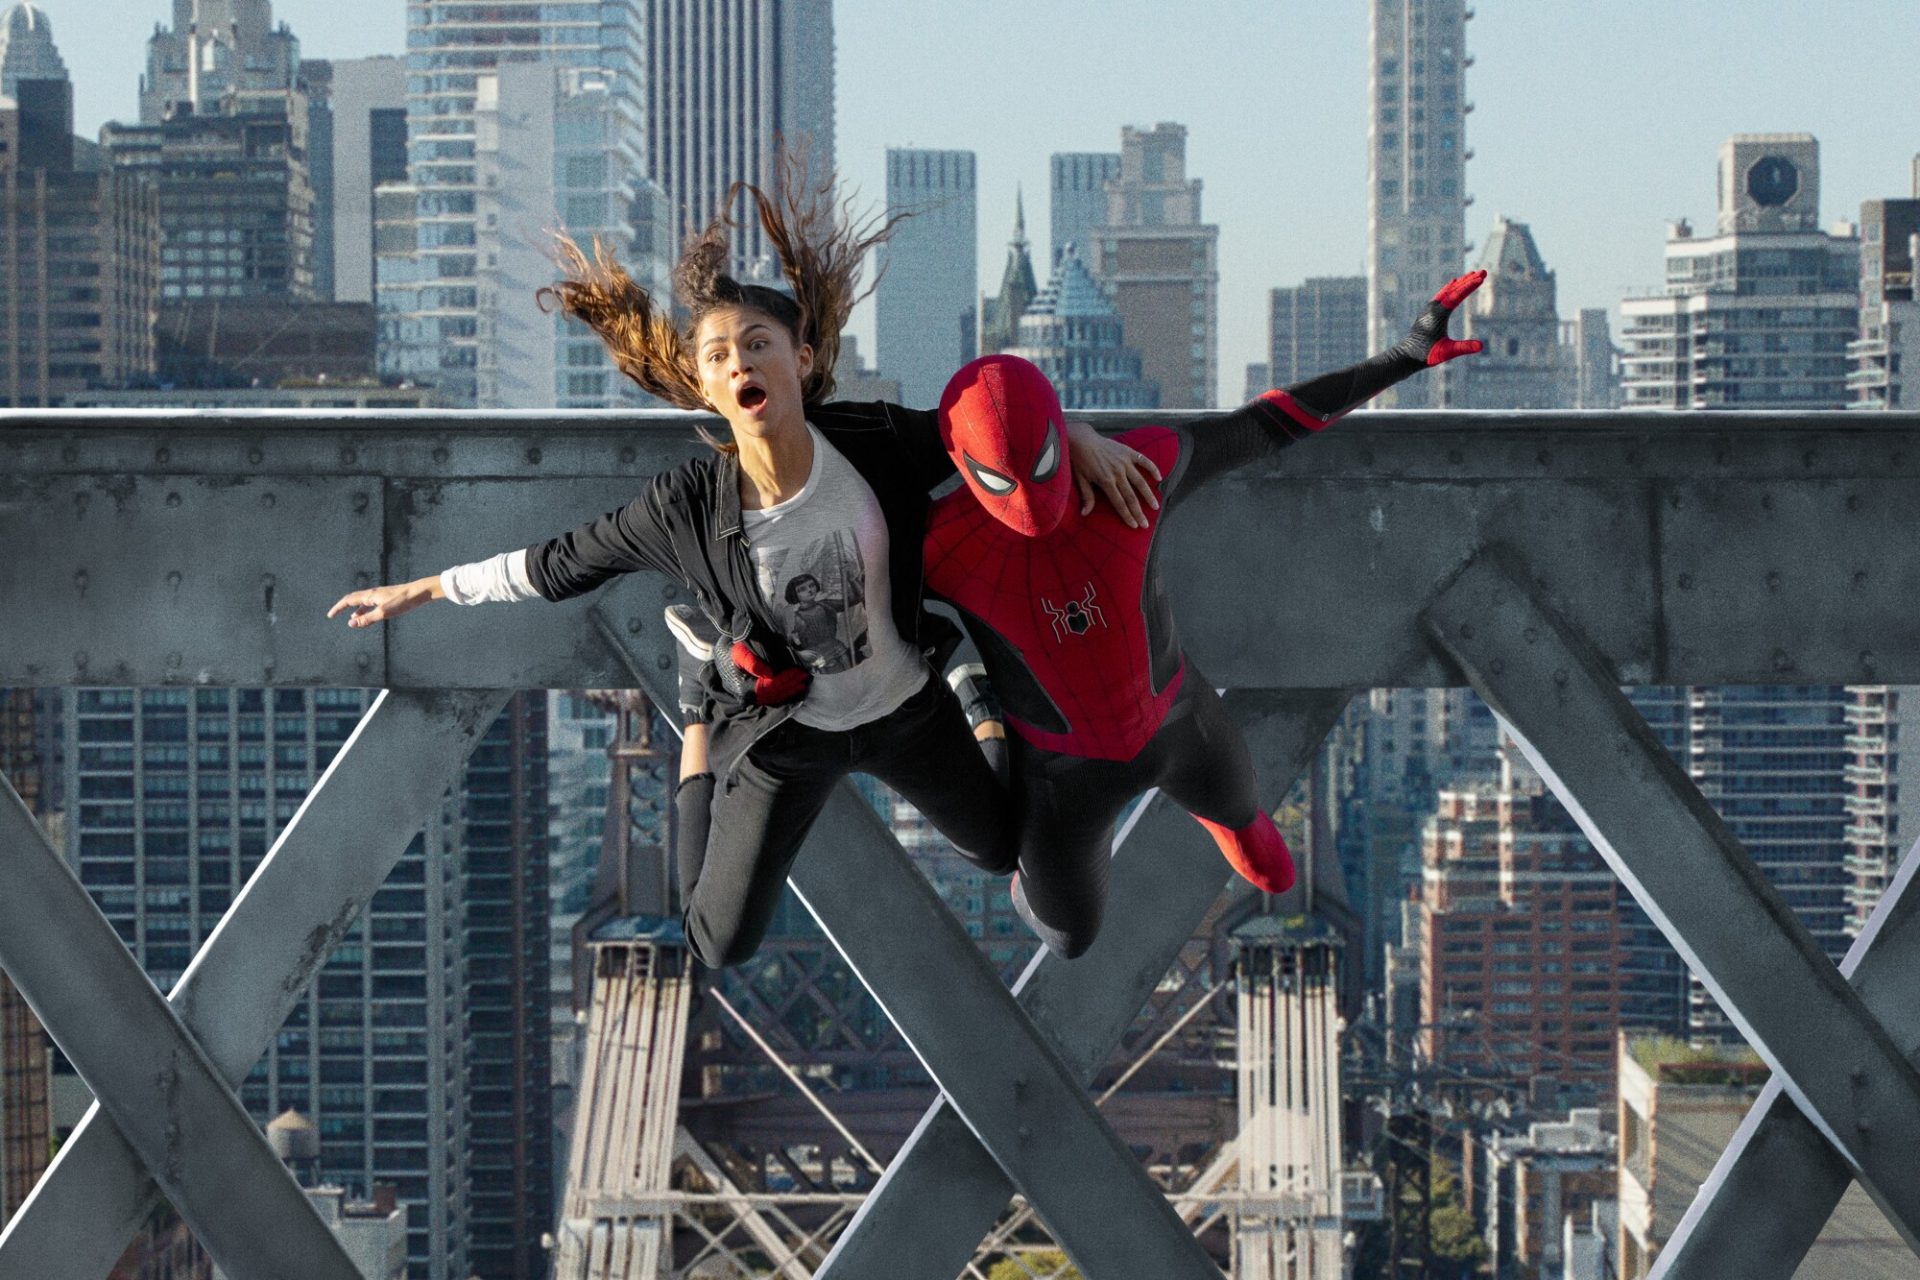 M*mees! con el nuevo trailer de Spider-Man: No Way Home